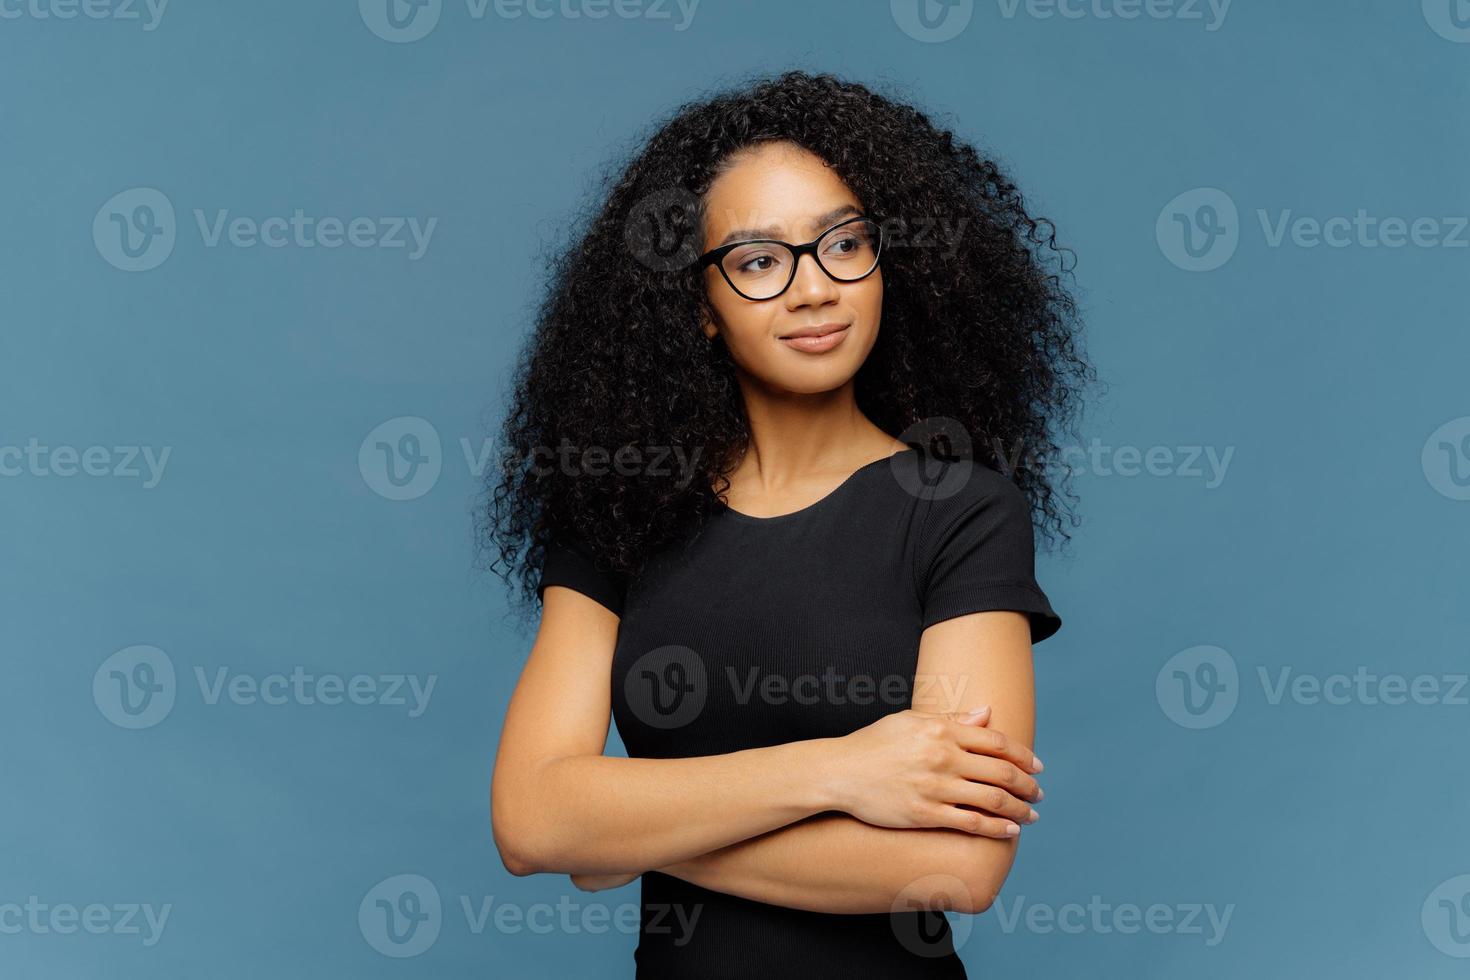 foto de mulher afro satisfeita pensativa mantém as mãos cruzadas sobre o peito, focada de lado, usa óculos transparentes, camiseta preta casual, isolada sobre fundo azul. conceito de expressões faciais humanas